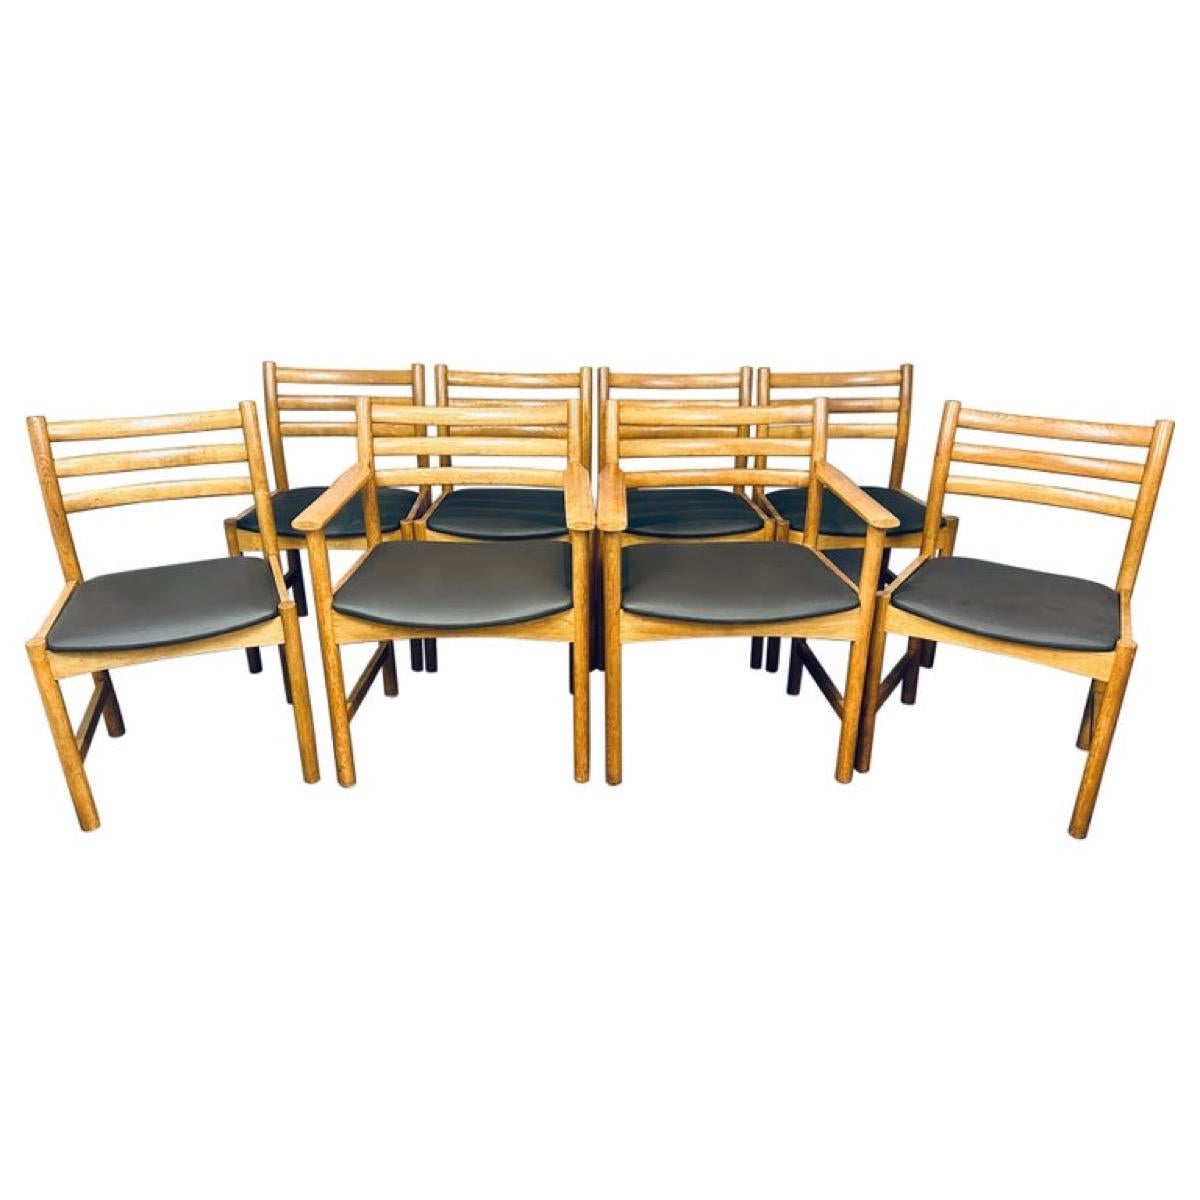 Un ensemble danois très robuste, bien fait et fonctionnel de 6 chaises de salle à manger à dossier en échelle (modèle 350) et de 2 fauteuils/carvers à dossier en échelle (modèle 351) conçu par Poul Volther et fabriqué par Sorø Stolefabrik dans les